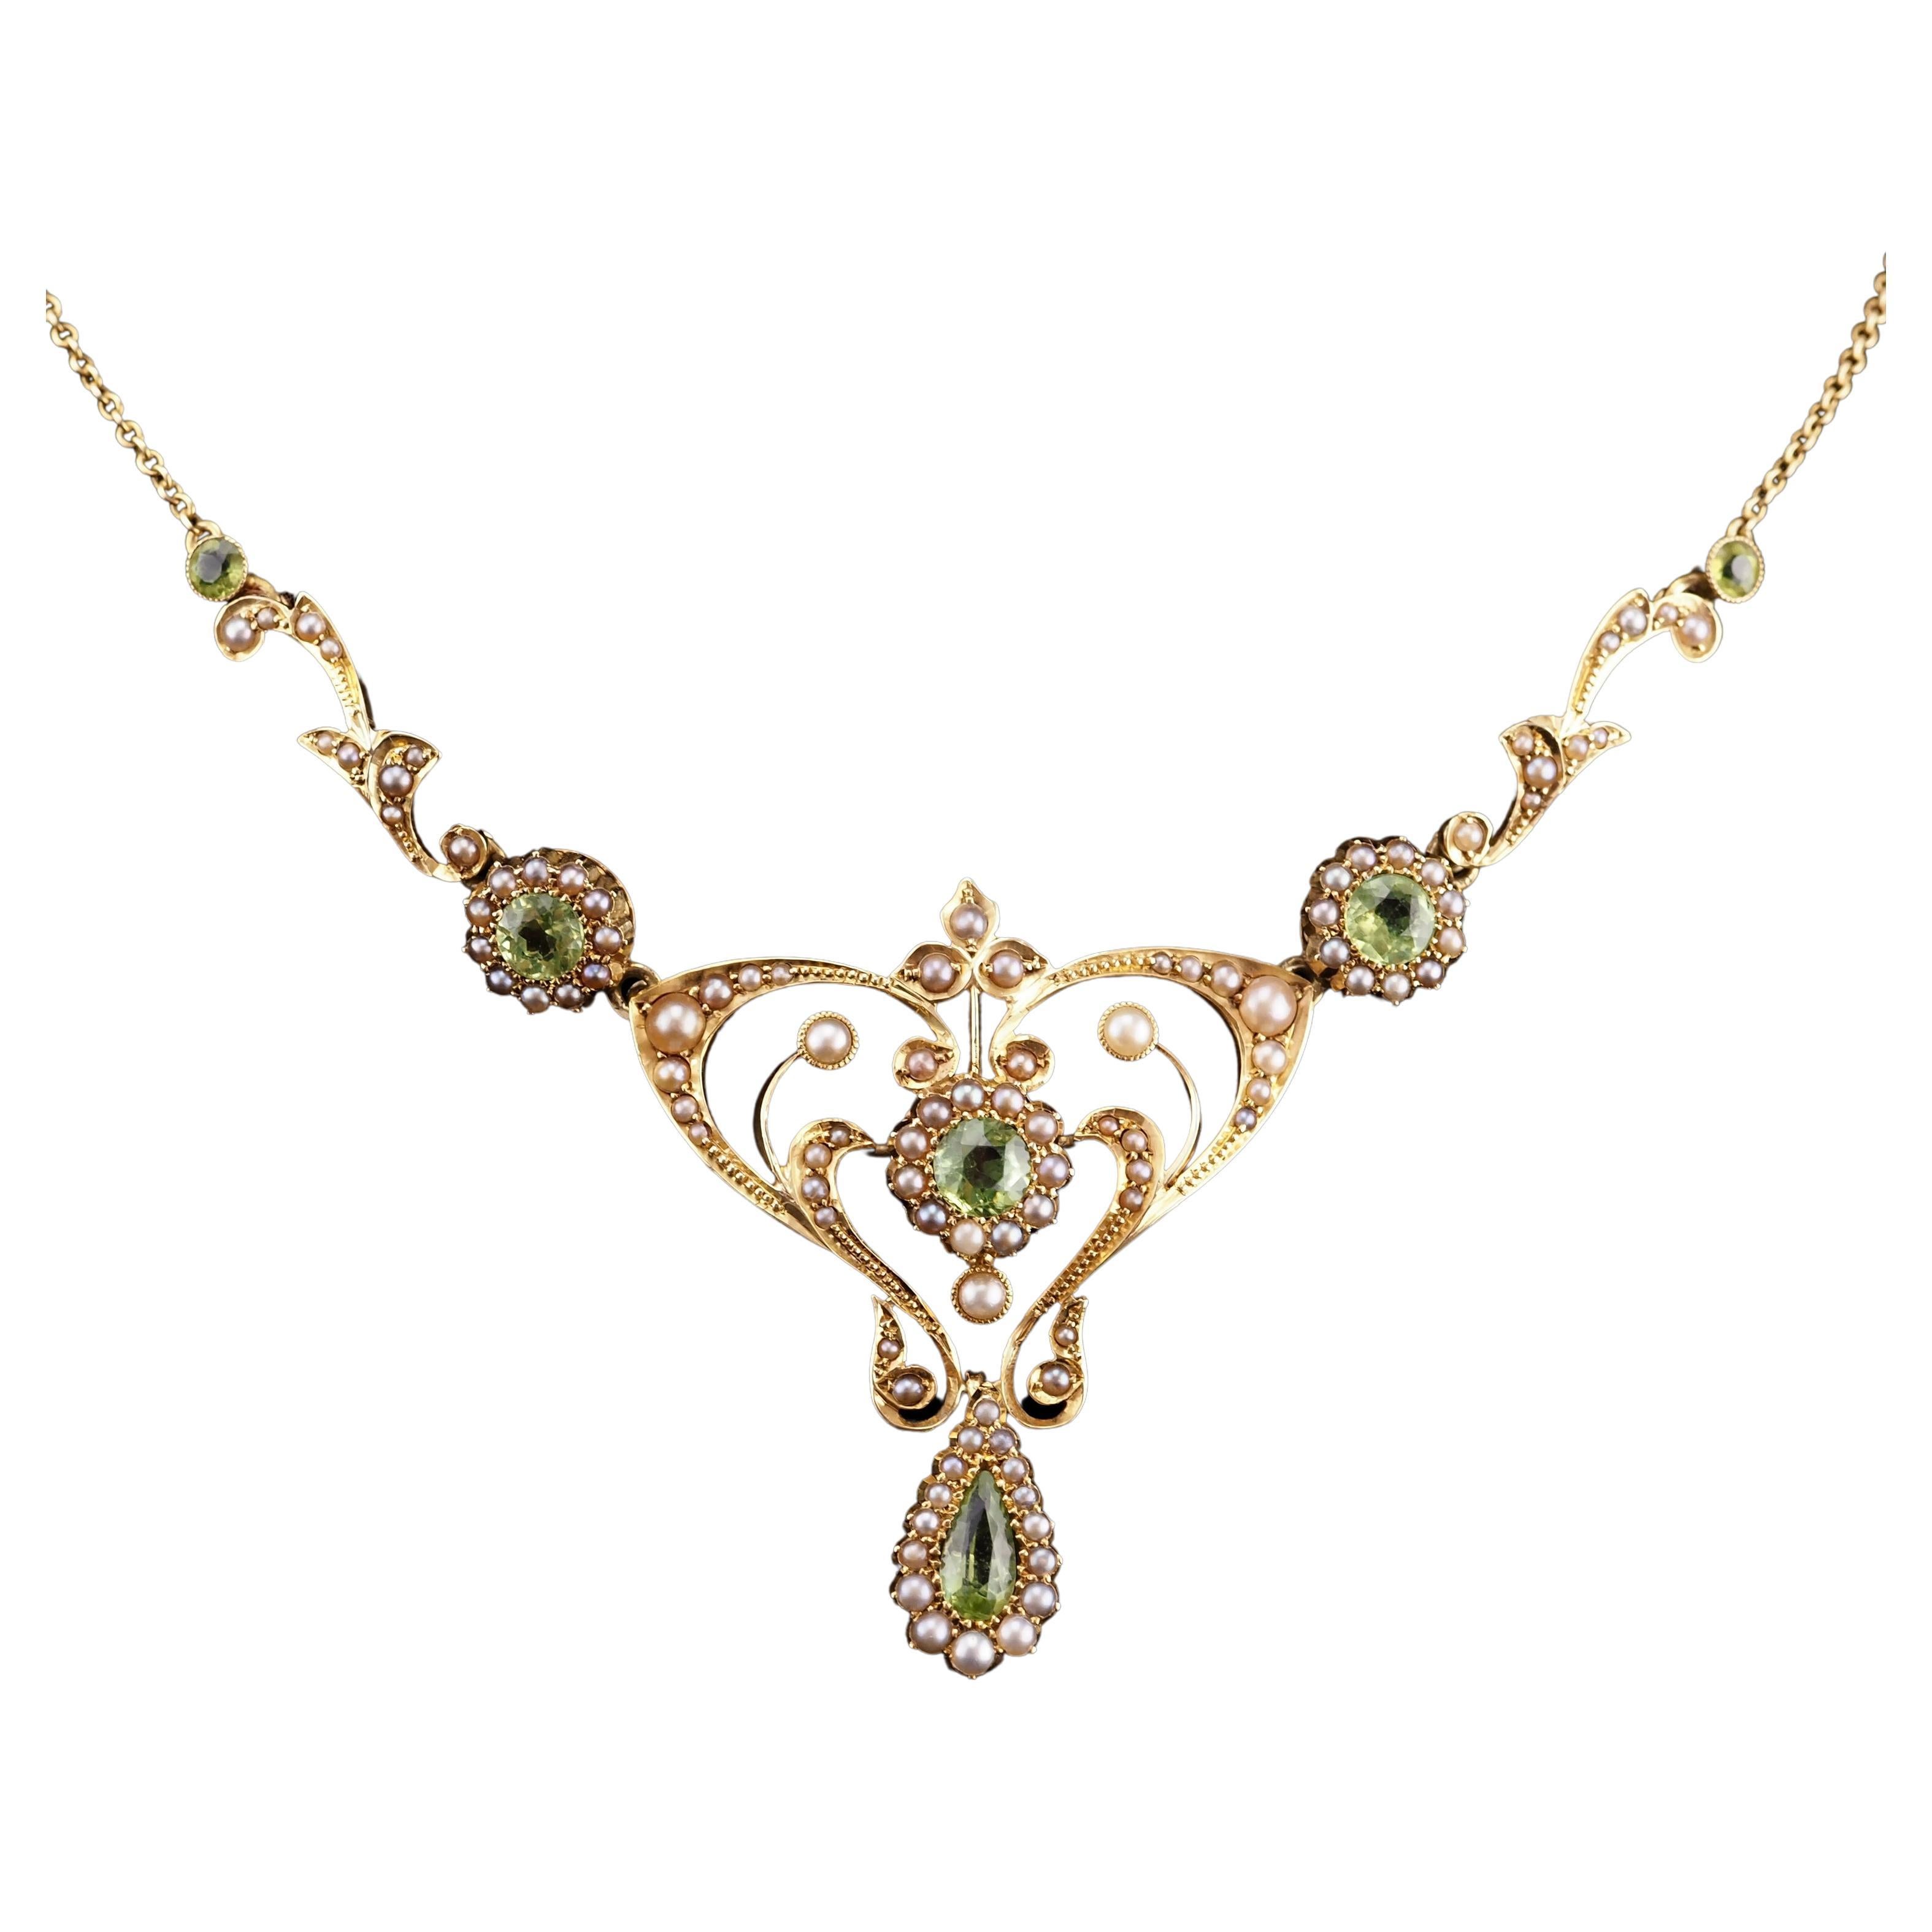 Antique 15K Gold Peridot & Pearl Lavalier Necklace - Art Nouveau c.1900s